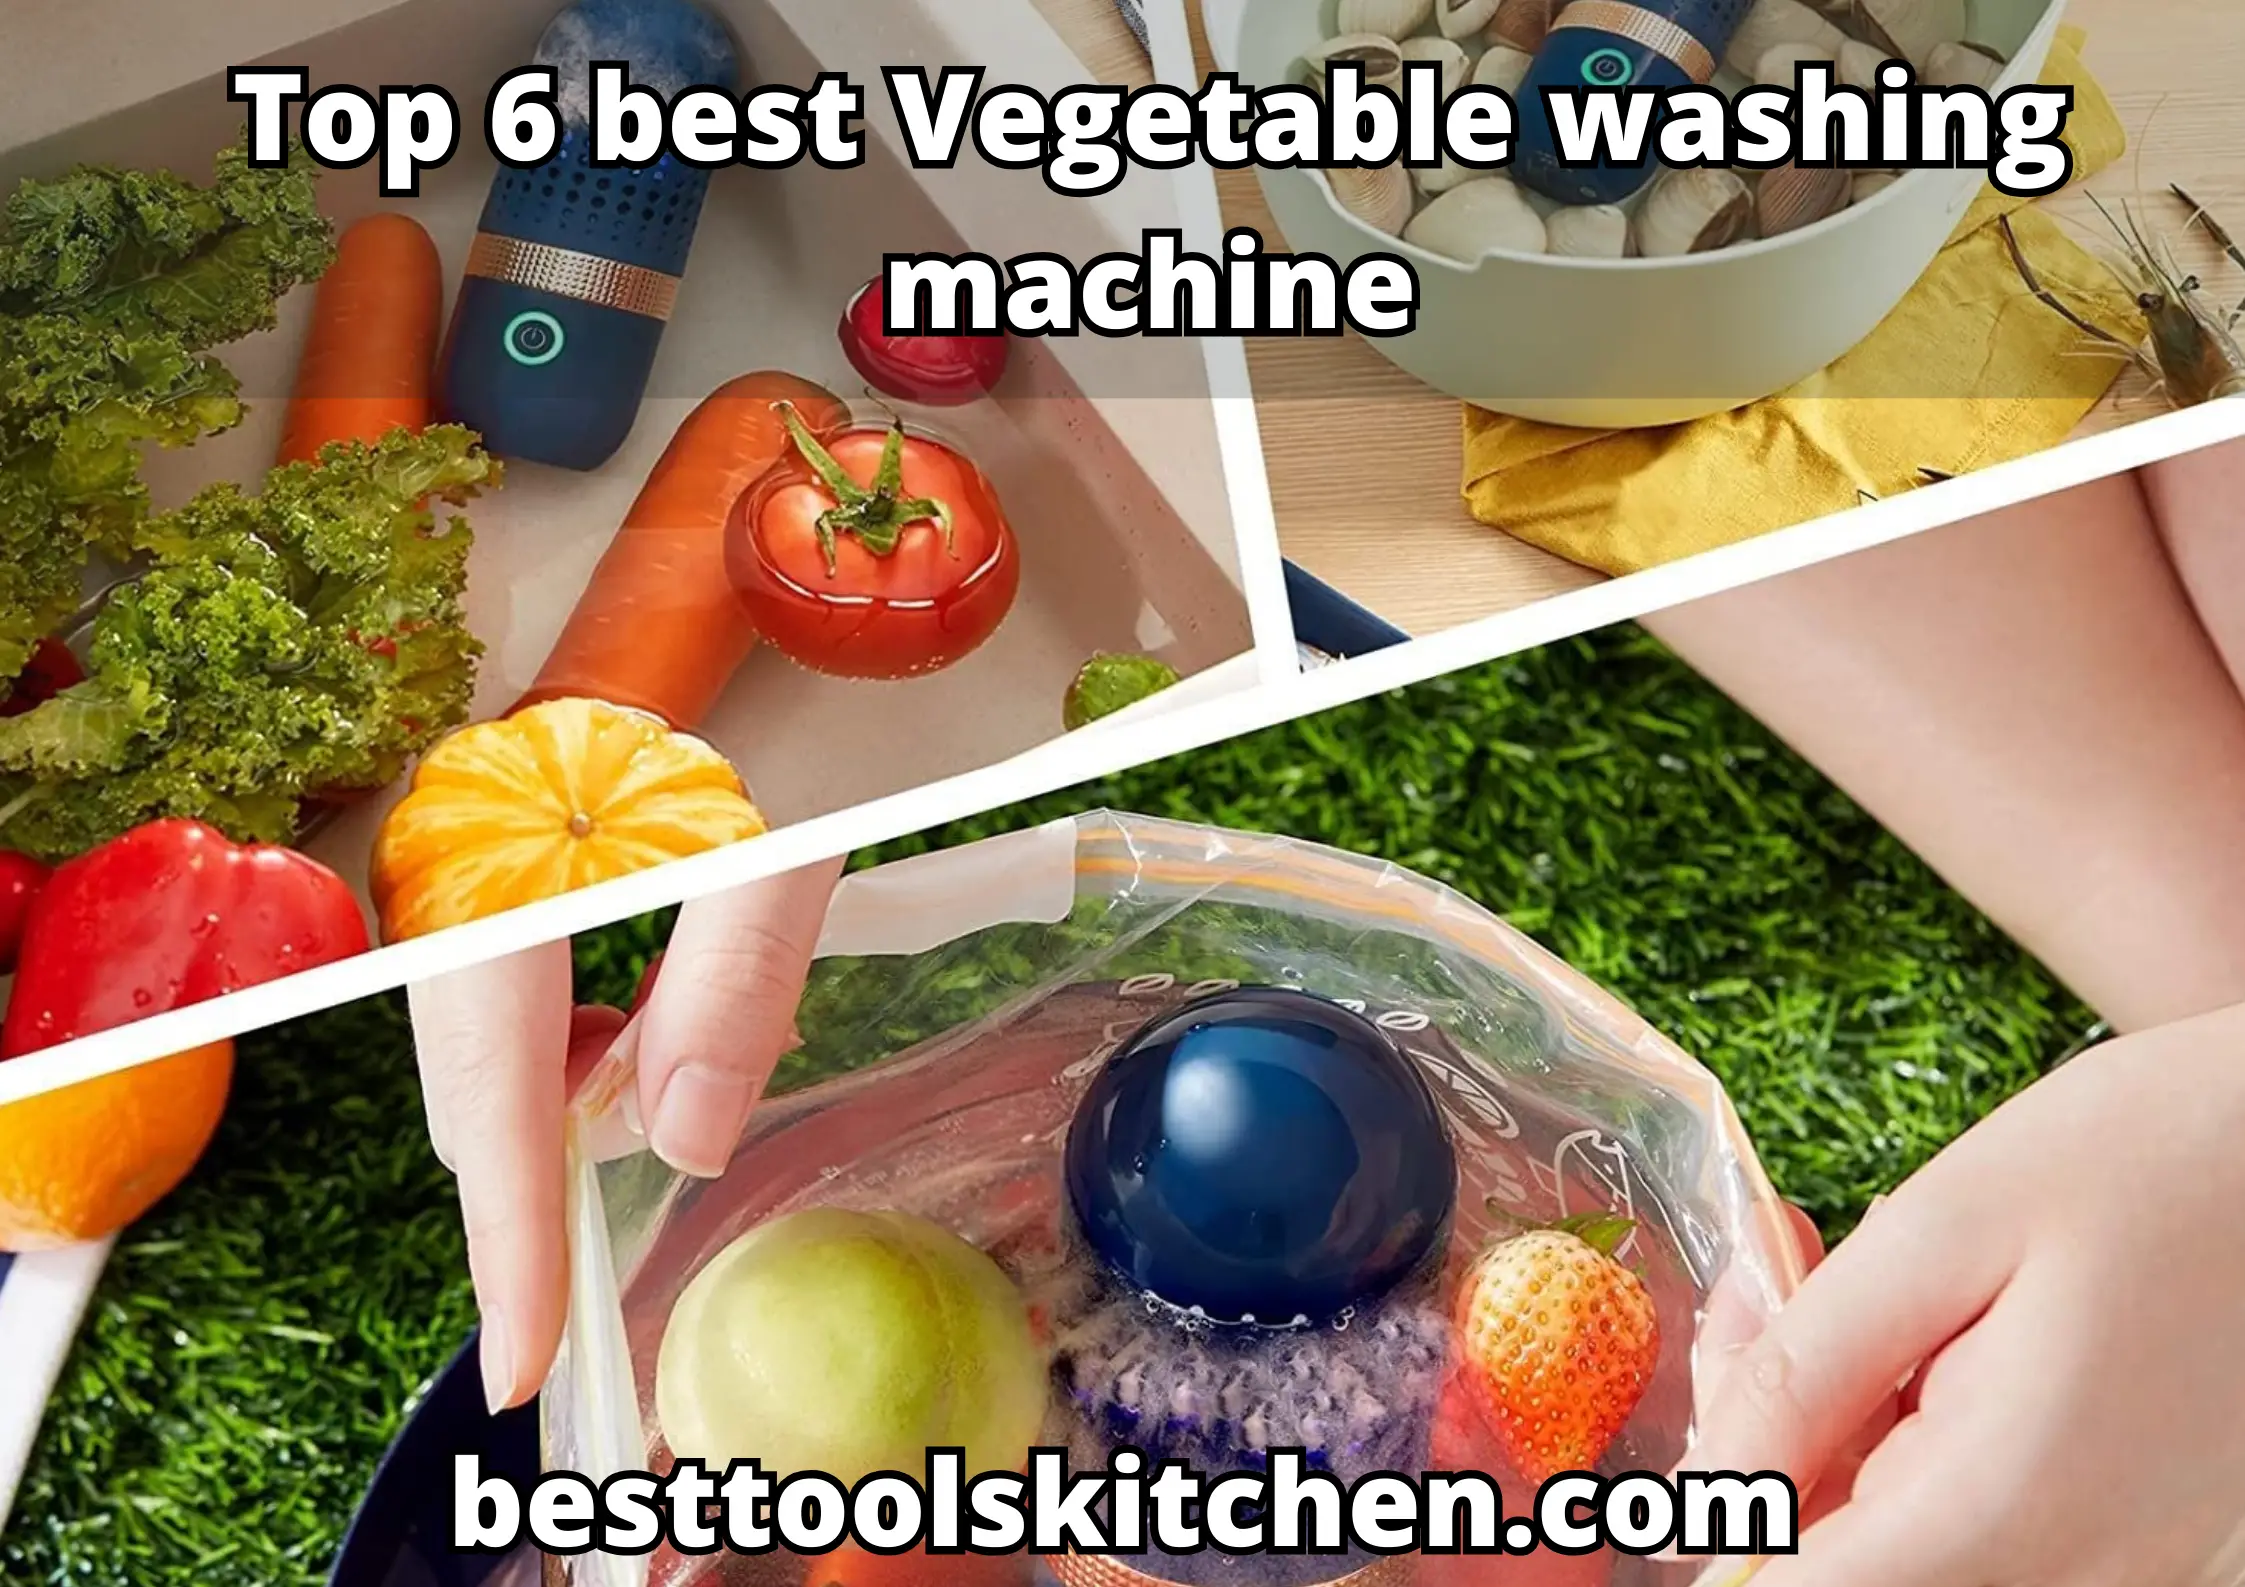 Top 6 Vegetable washing machine